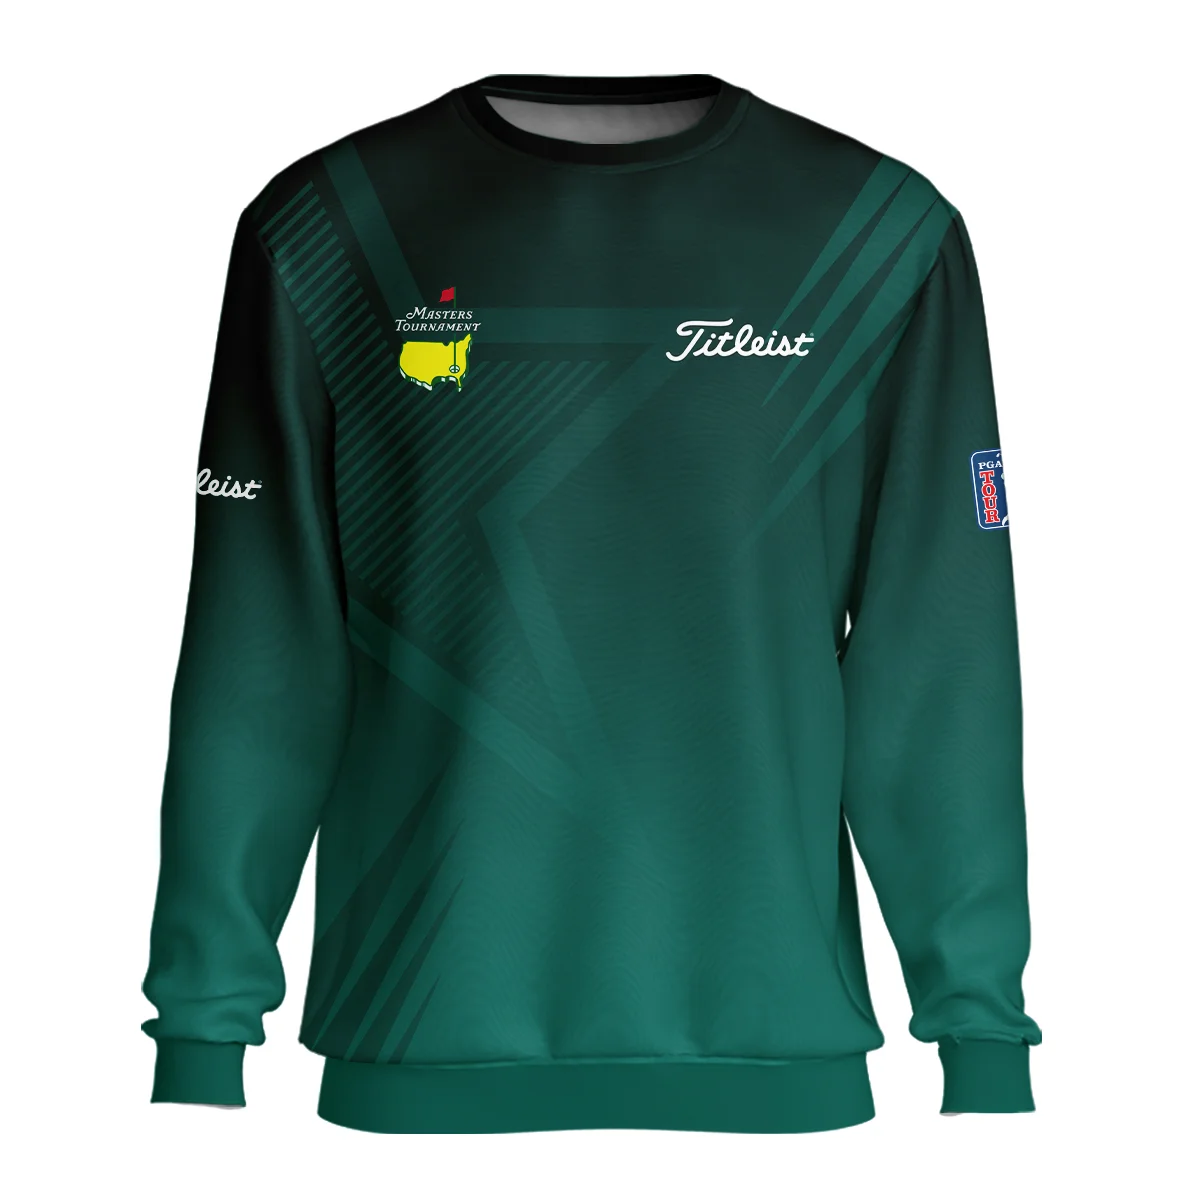 Sports Titleist Masters Tournament Hoodie Shirt Star Pattern Dark Green Gradient Golf Hoodie Shirt